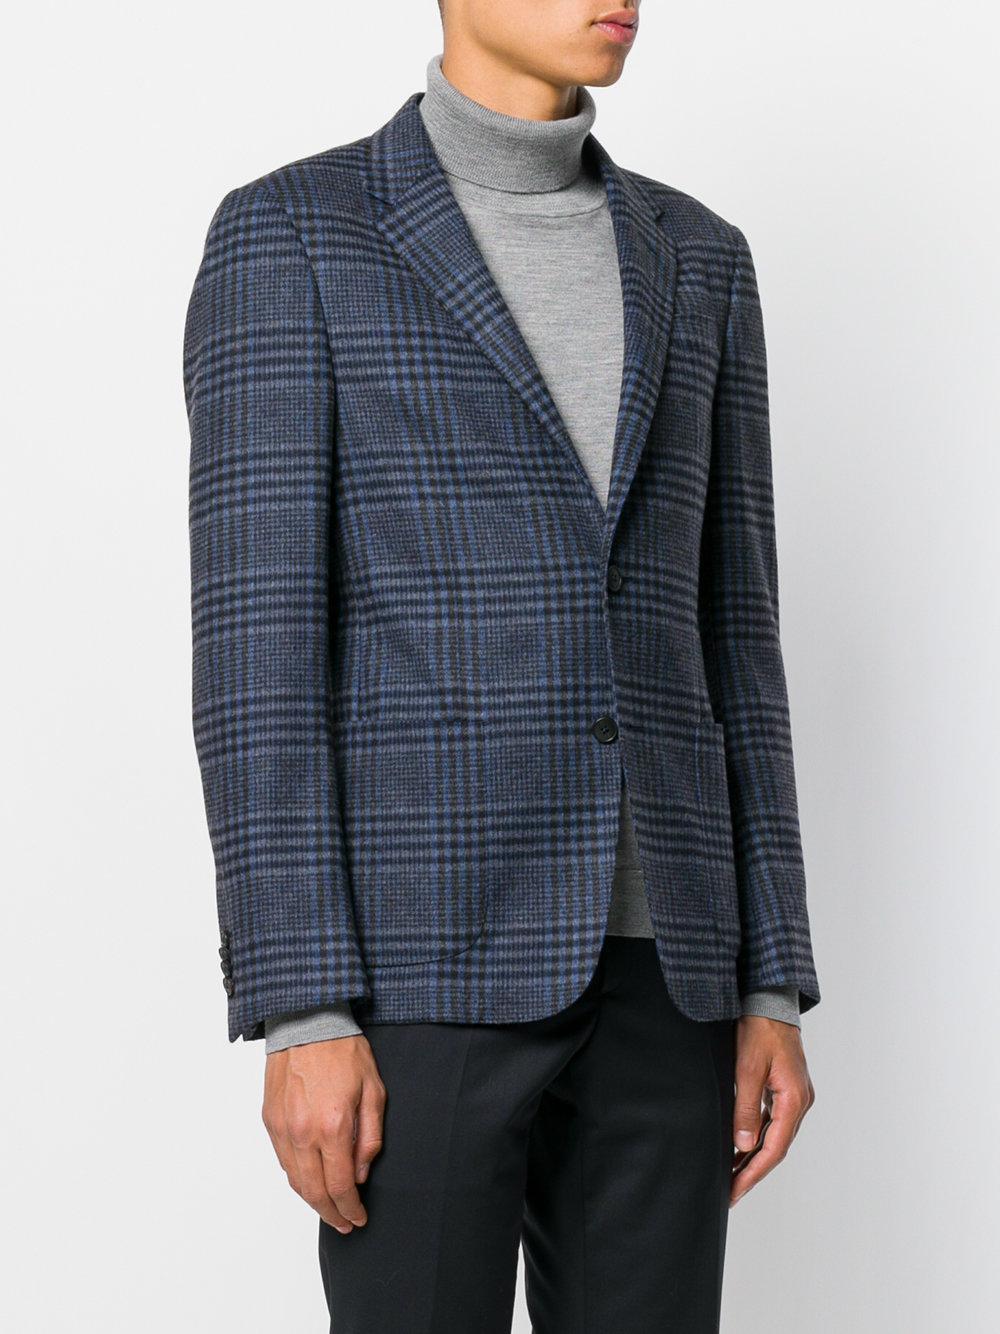 Z Zegna Wool Checkered Blazer in Blue for Men - Lyst